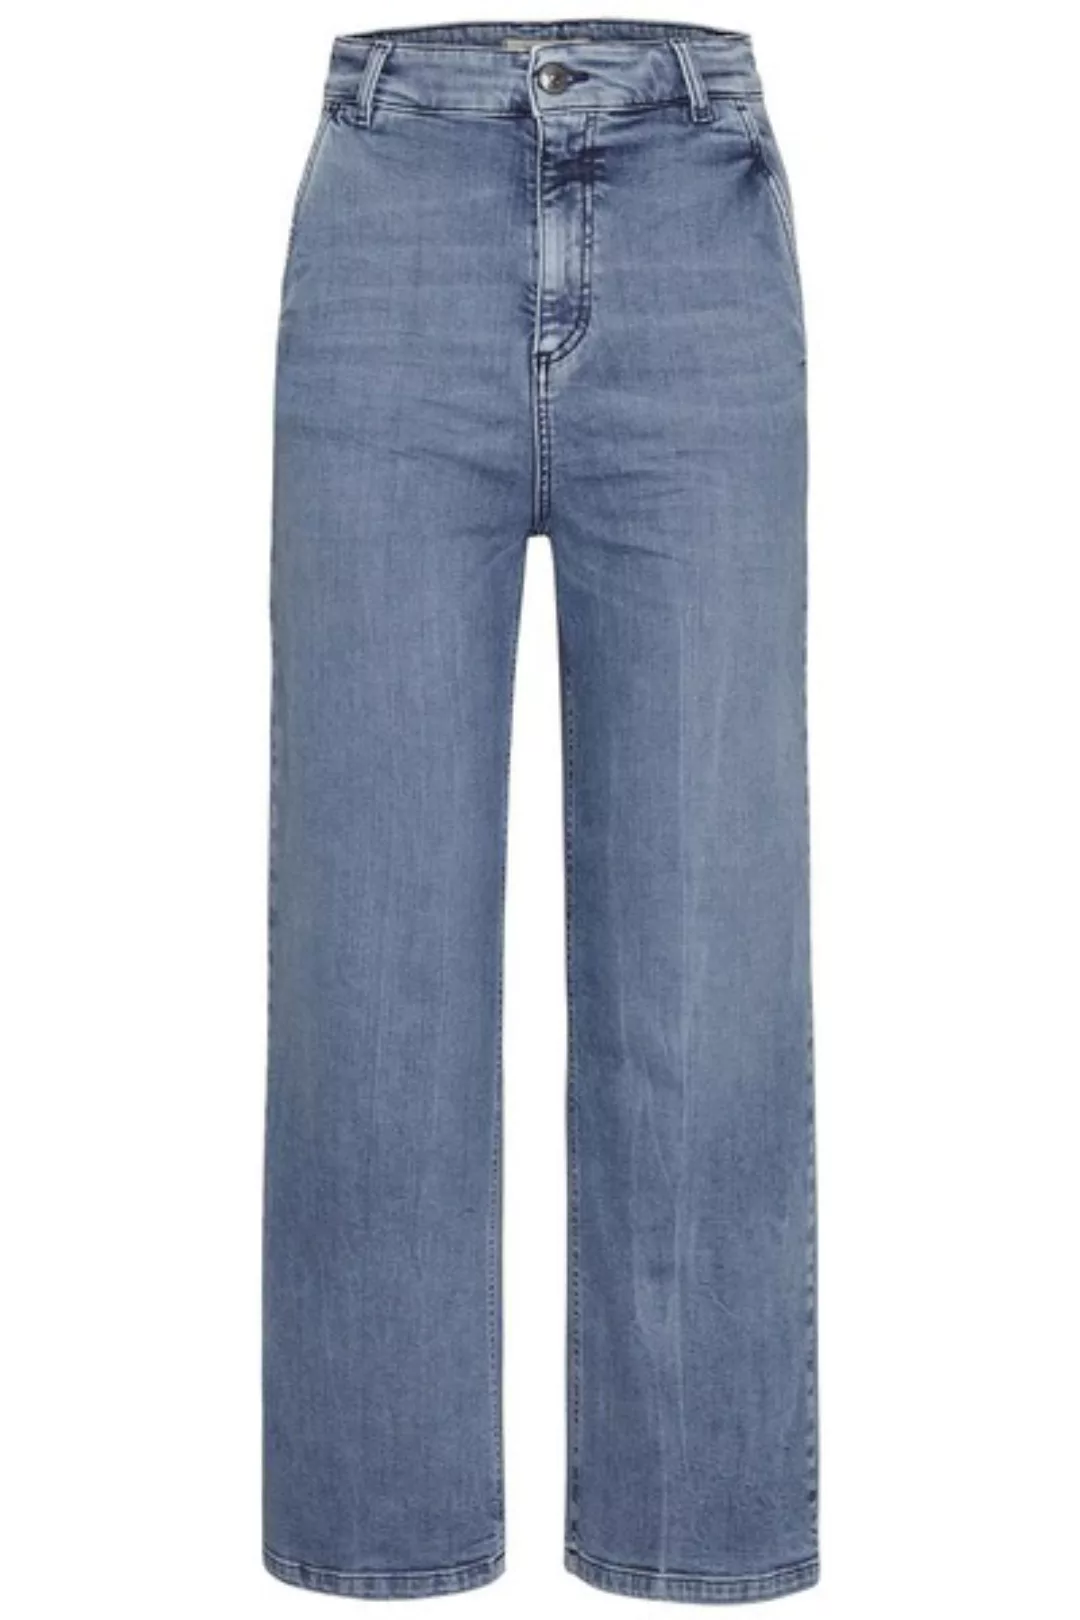 Damen Jeans "Audrey 7/8 Eco Bleach" günstig online kaufen